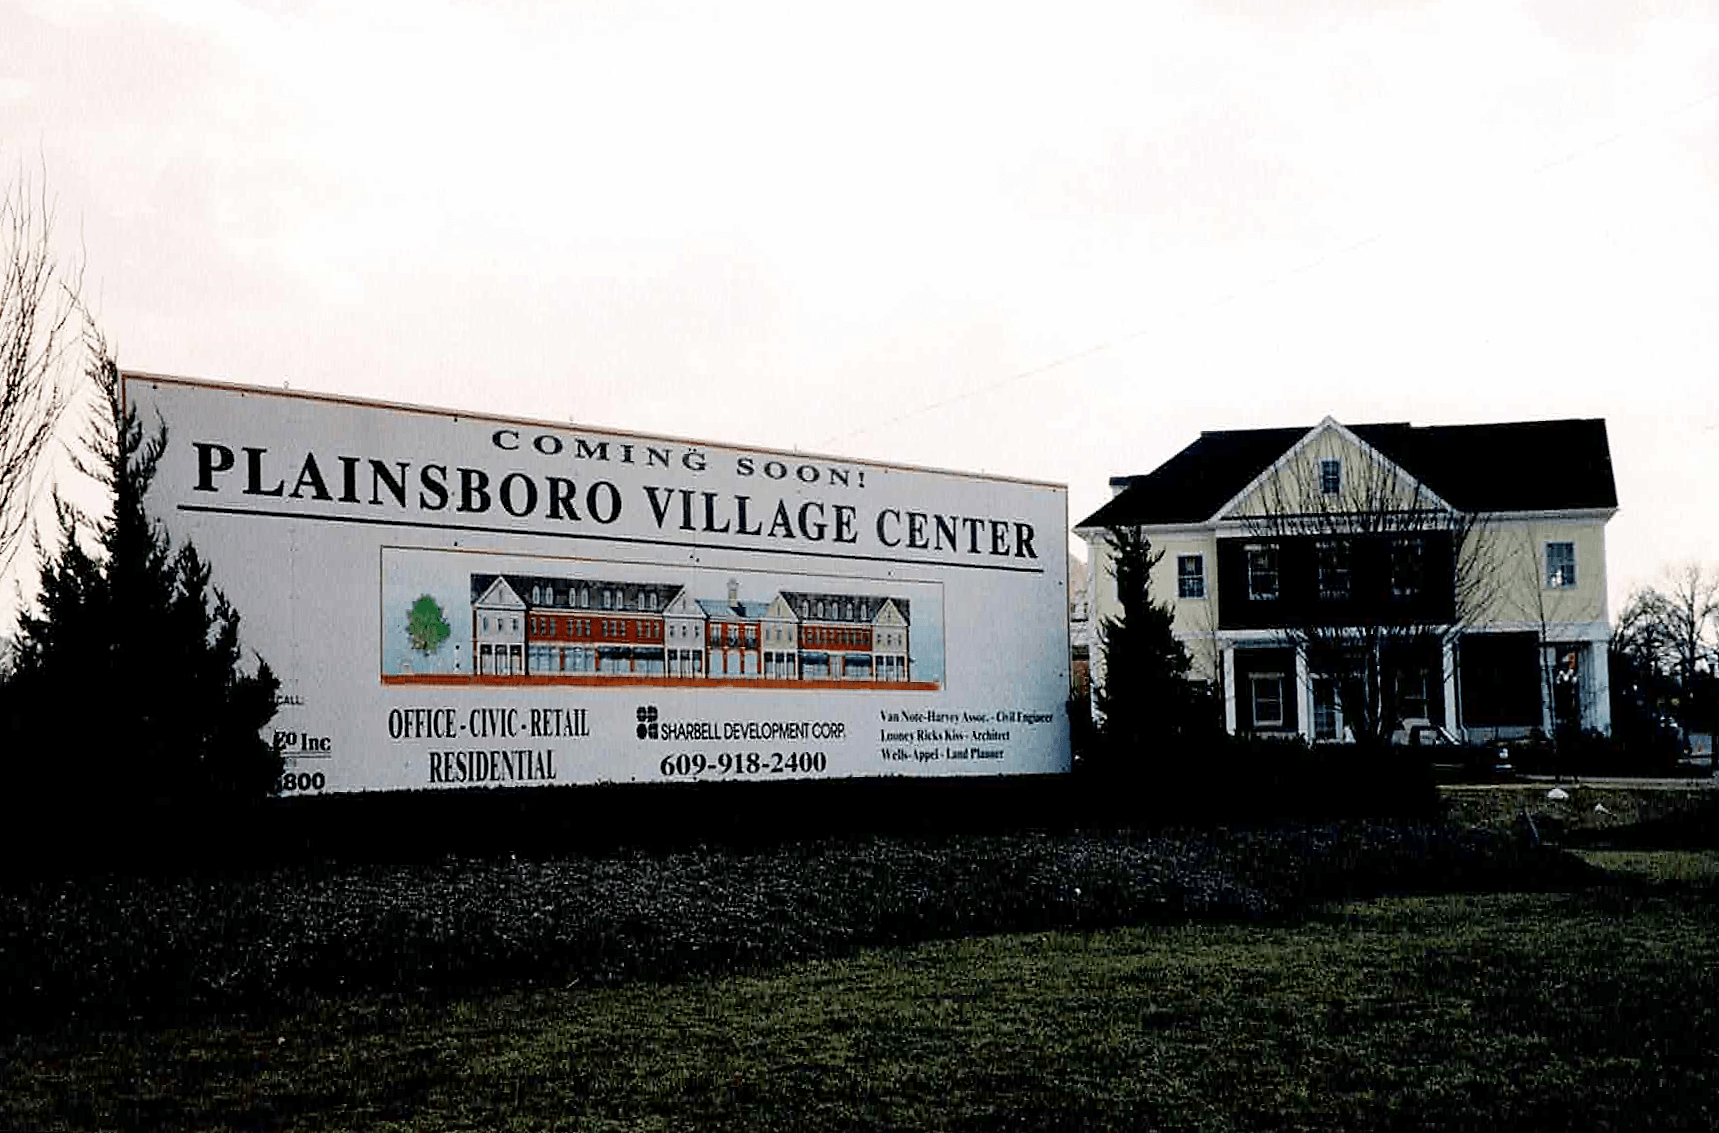 Plainsboro Village Center construction, April 2006